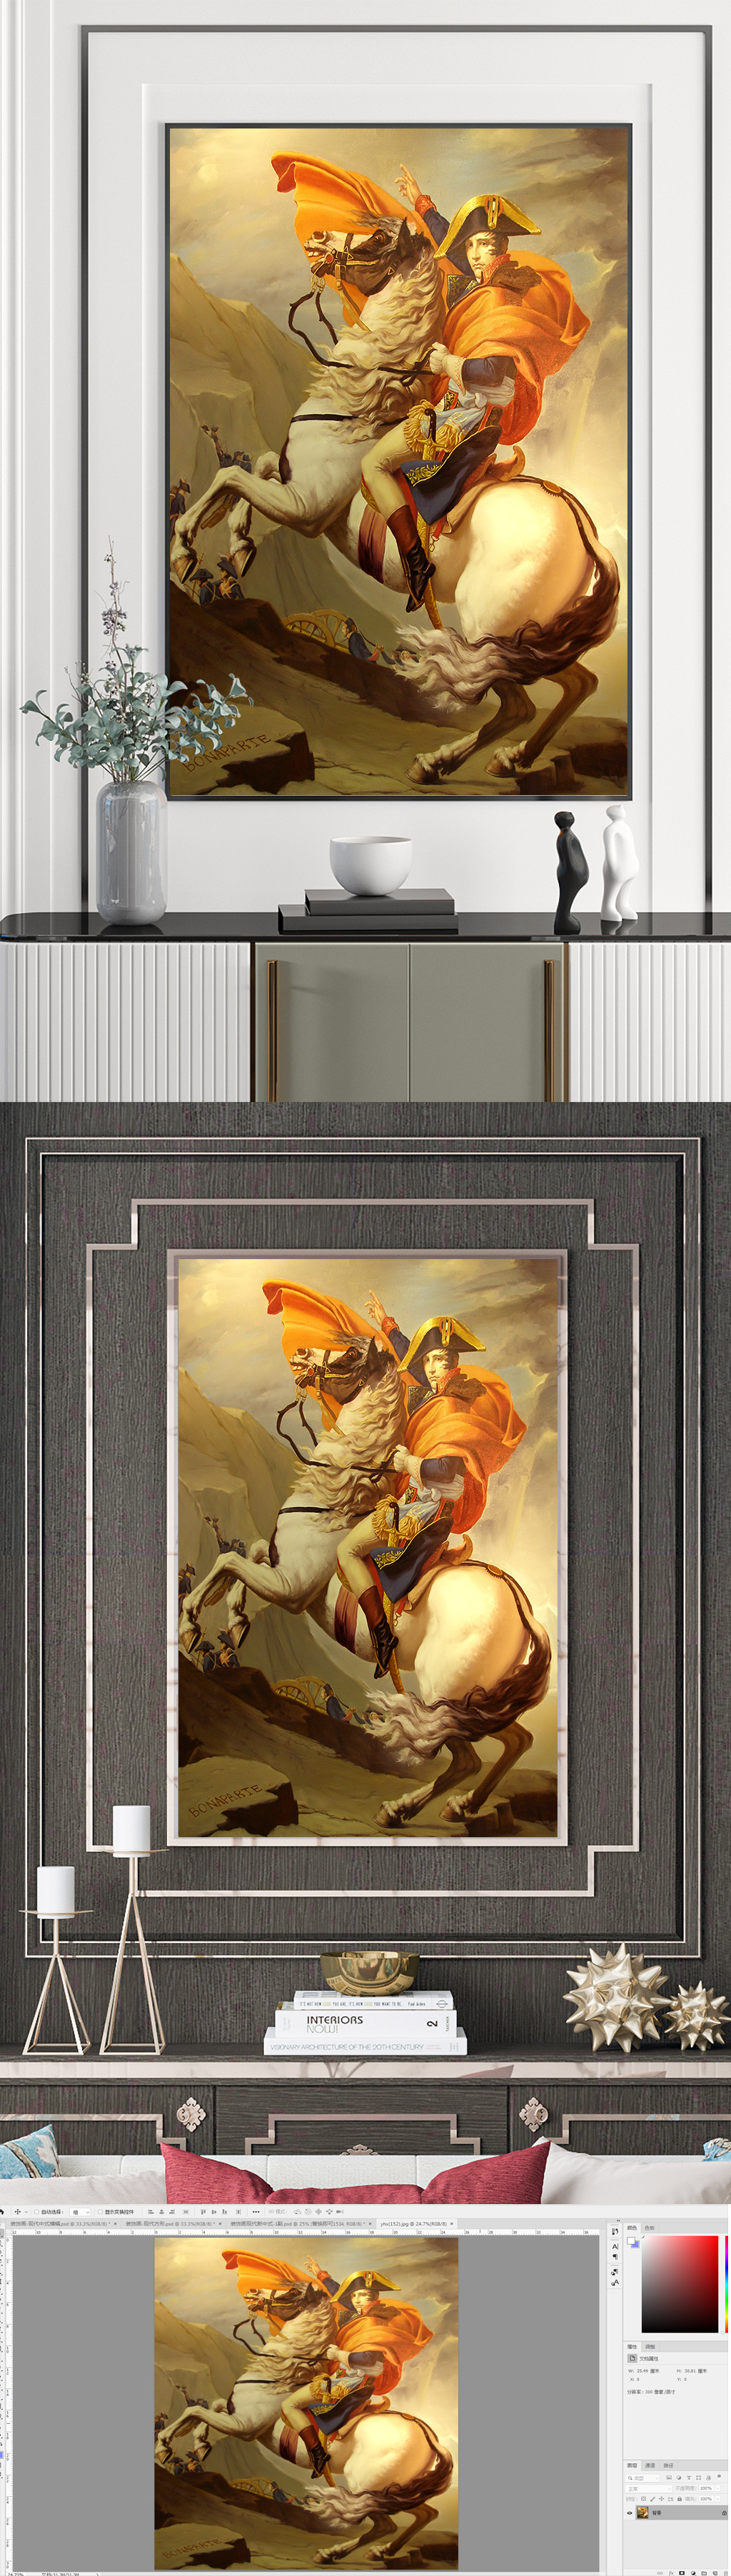 拿破仑骑马的油画意义图片